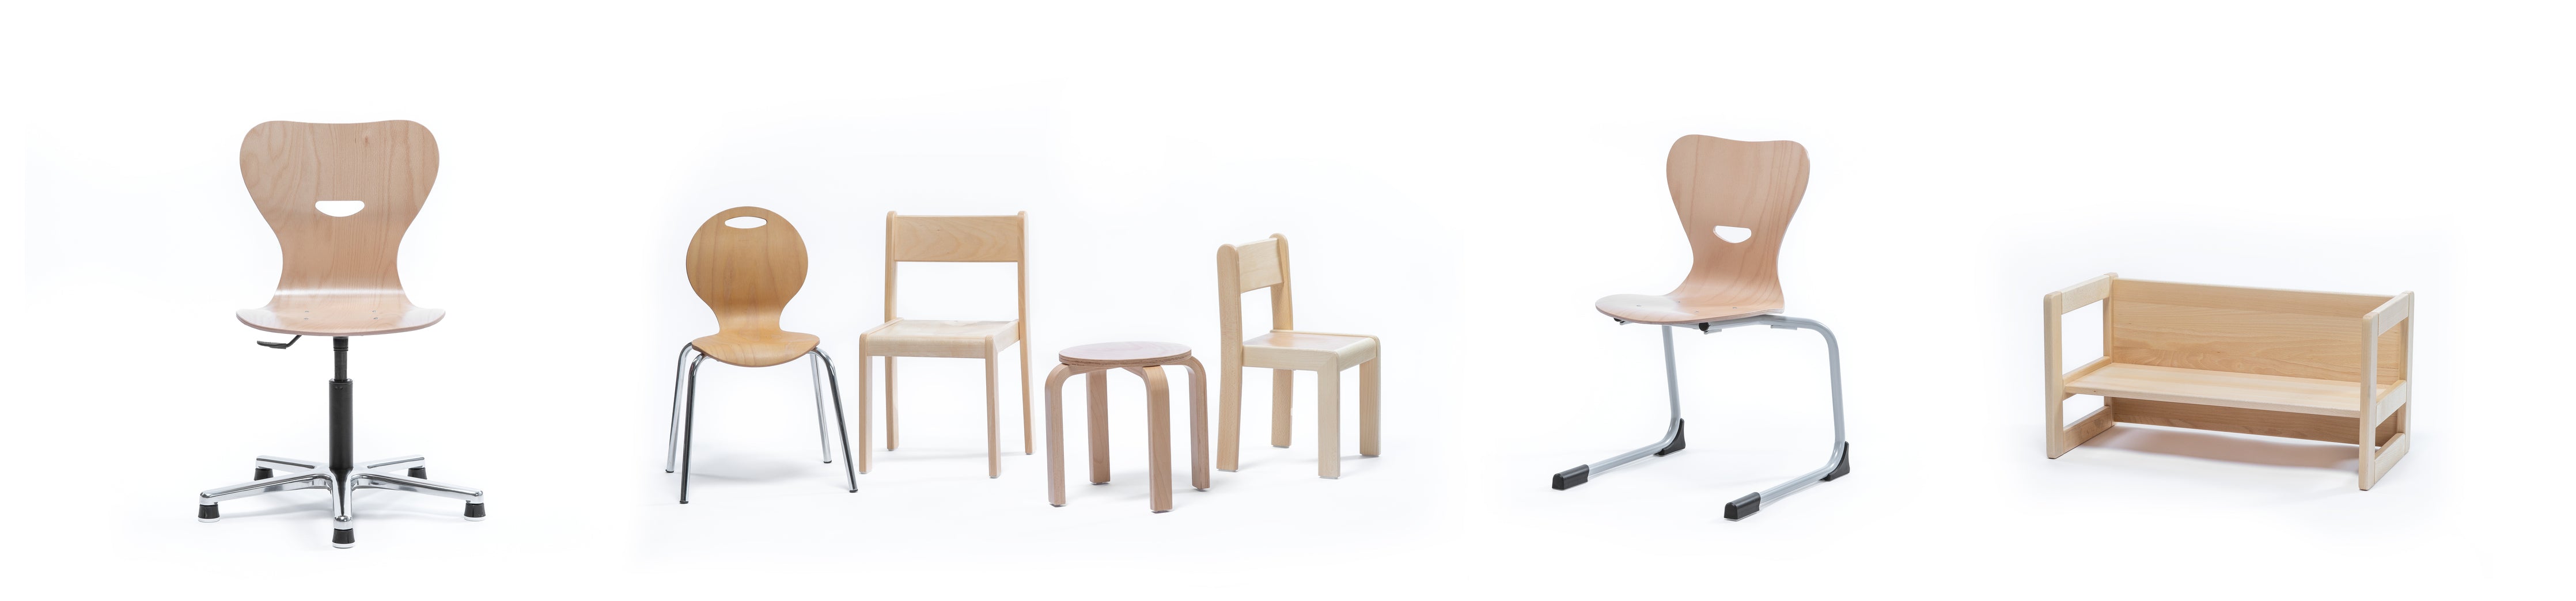 Stühle für Kitas Kindergarten und Schulen aus hochwertigem Holz